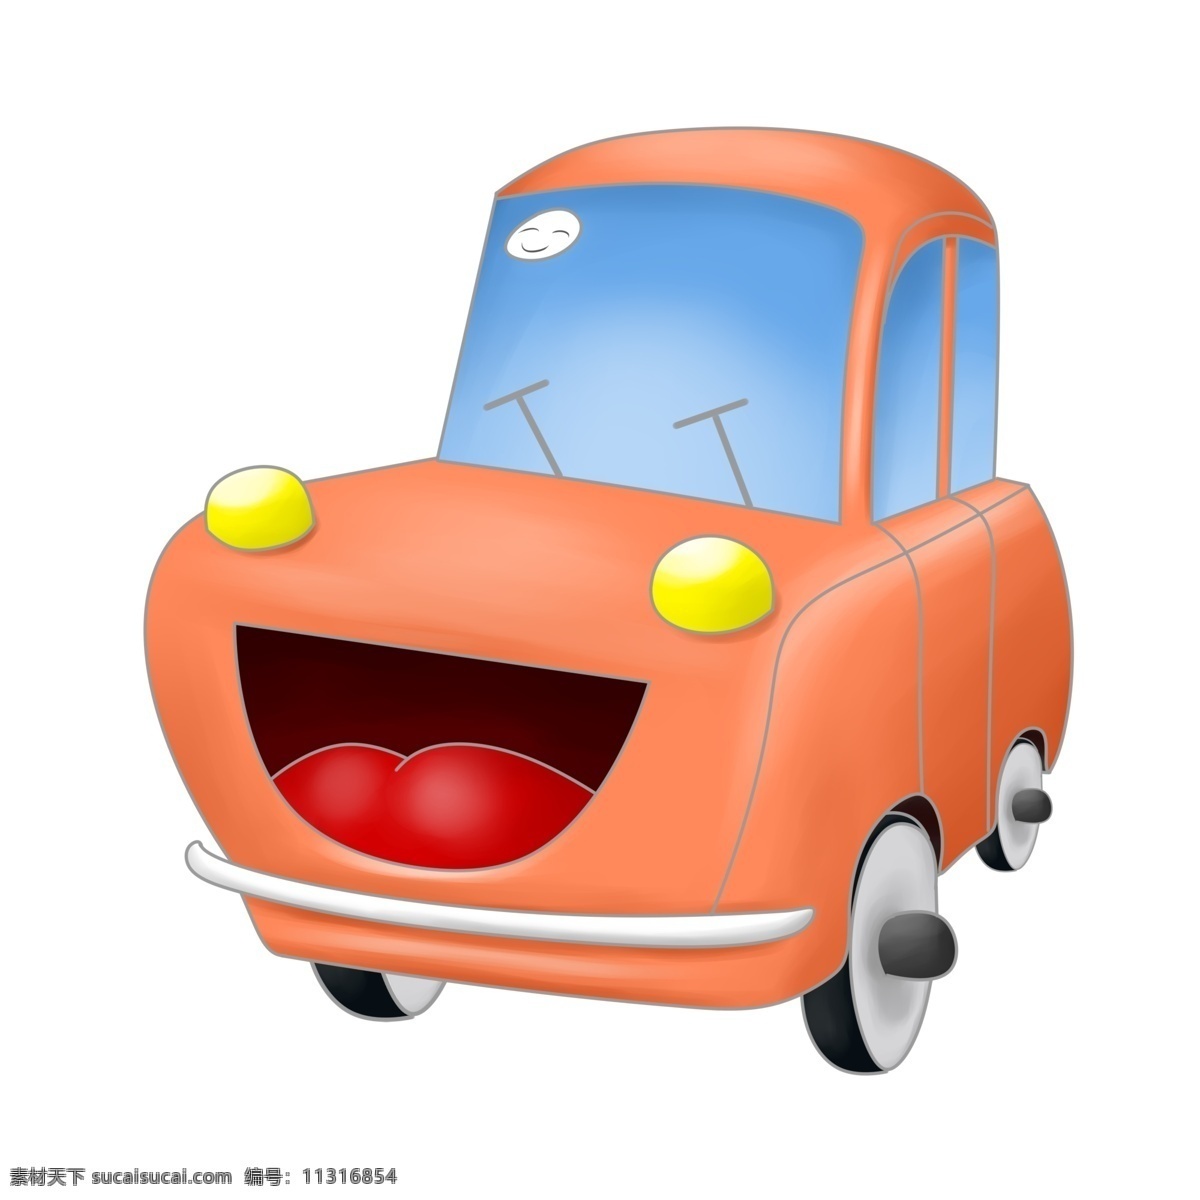 开心 拟人 汽车 插画 橙色的汽车 拟人的汽车 卡通插画 汽车插画 进口汽车 国产汽车 中国汽车